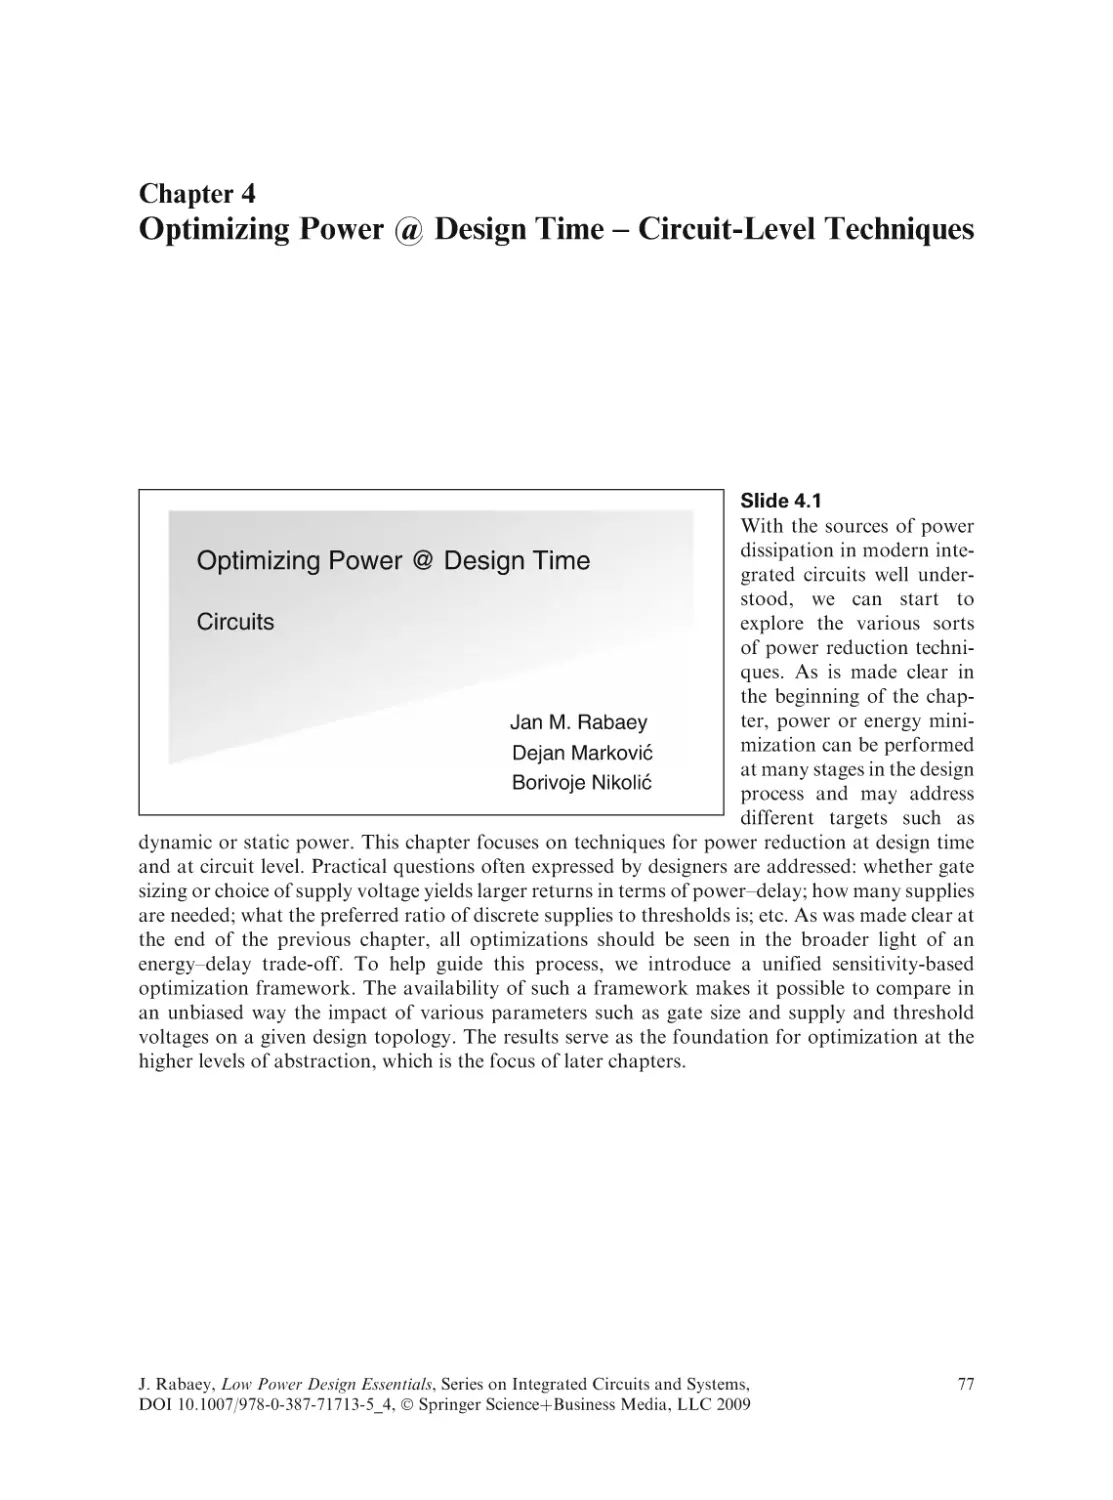 Optimizing Power @ Design Time - Circuit-Level Techniques
Slide 4.1